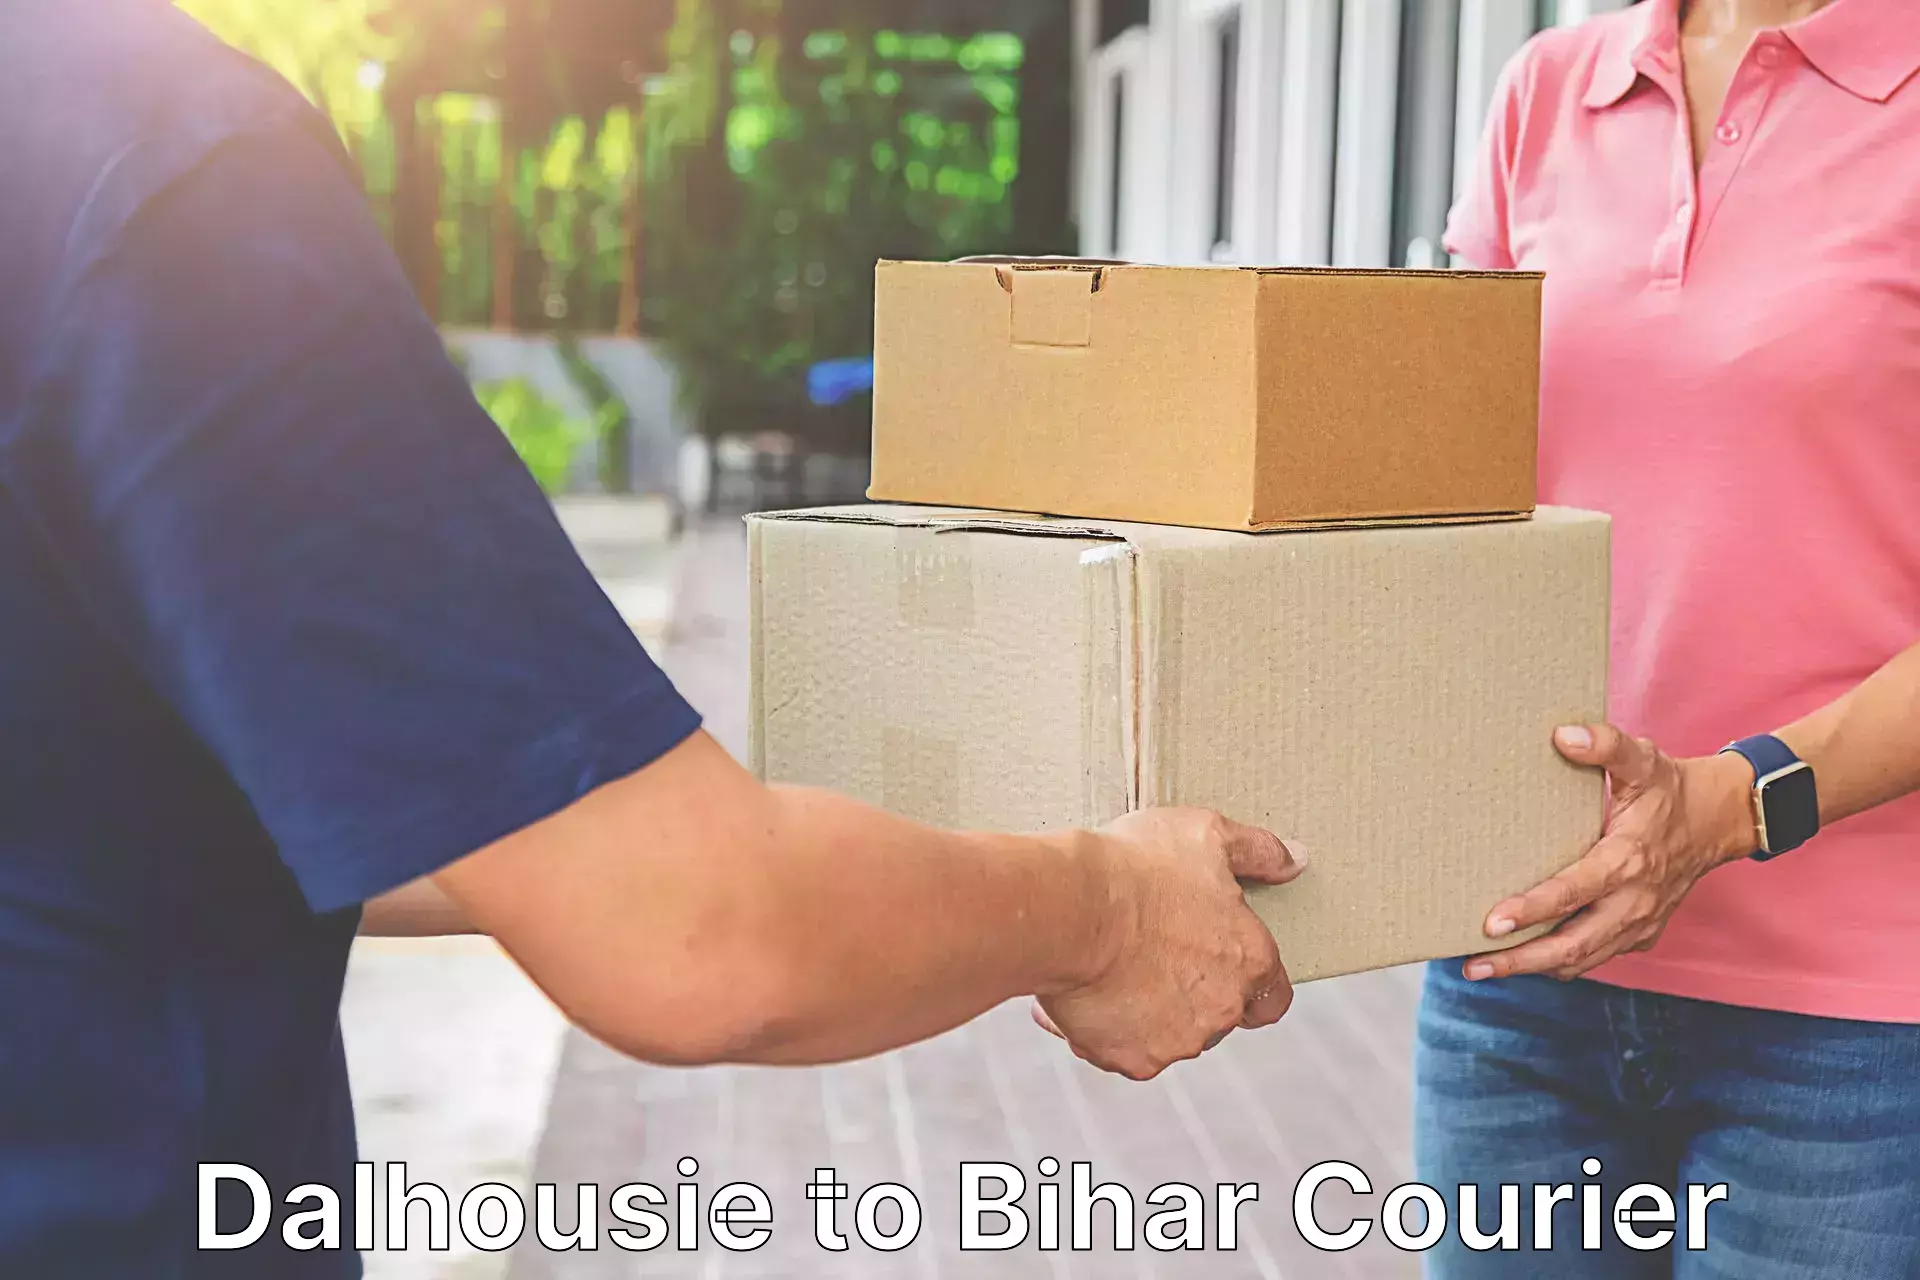 Pharmaceutical courier Dalhousie to Bihar